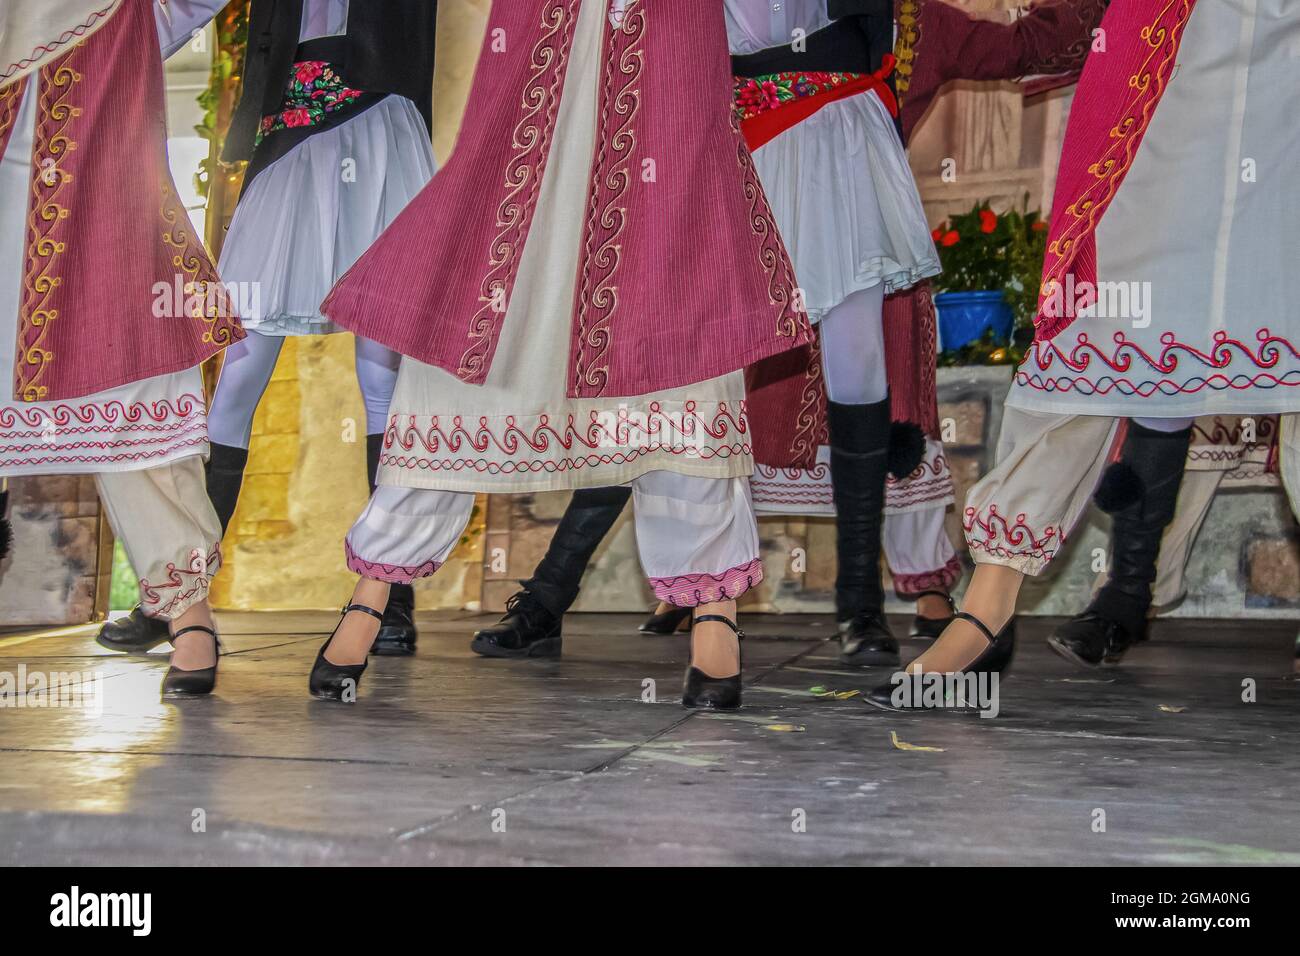 Beschnittene Ansicht griechischer Tänzer auf der Bühne in einem wunderschönen gestickten Kostüm mit Frauen vor Männern - Beine und Füße - Bewegungsunschärfe Stockfoto